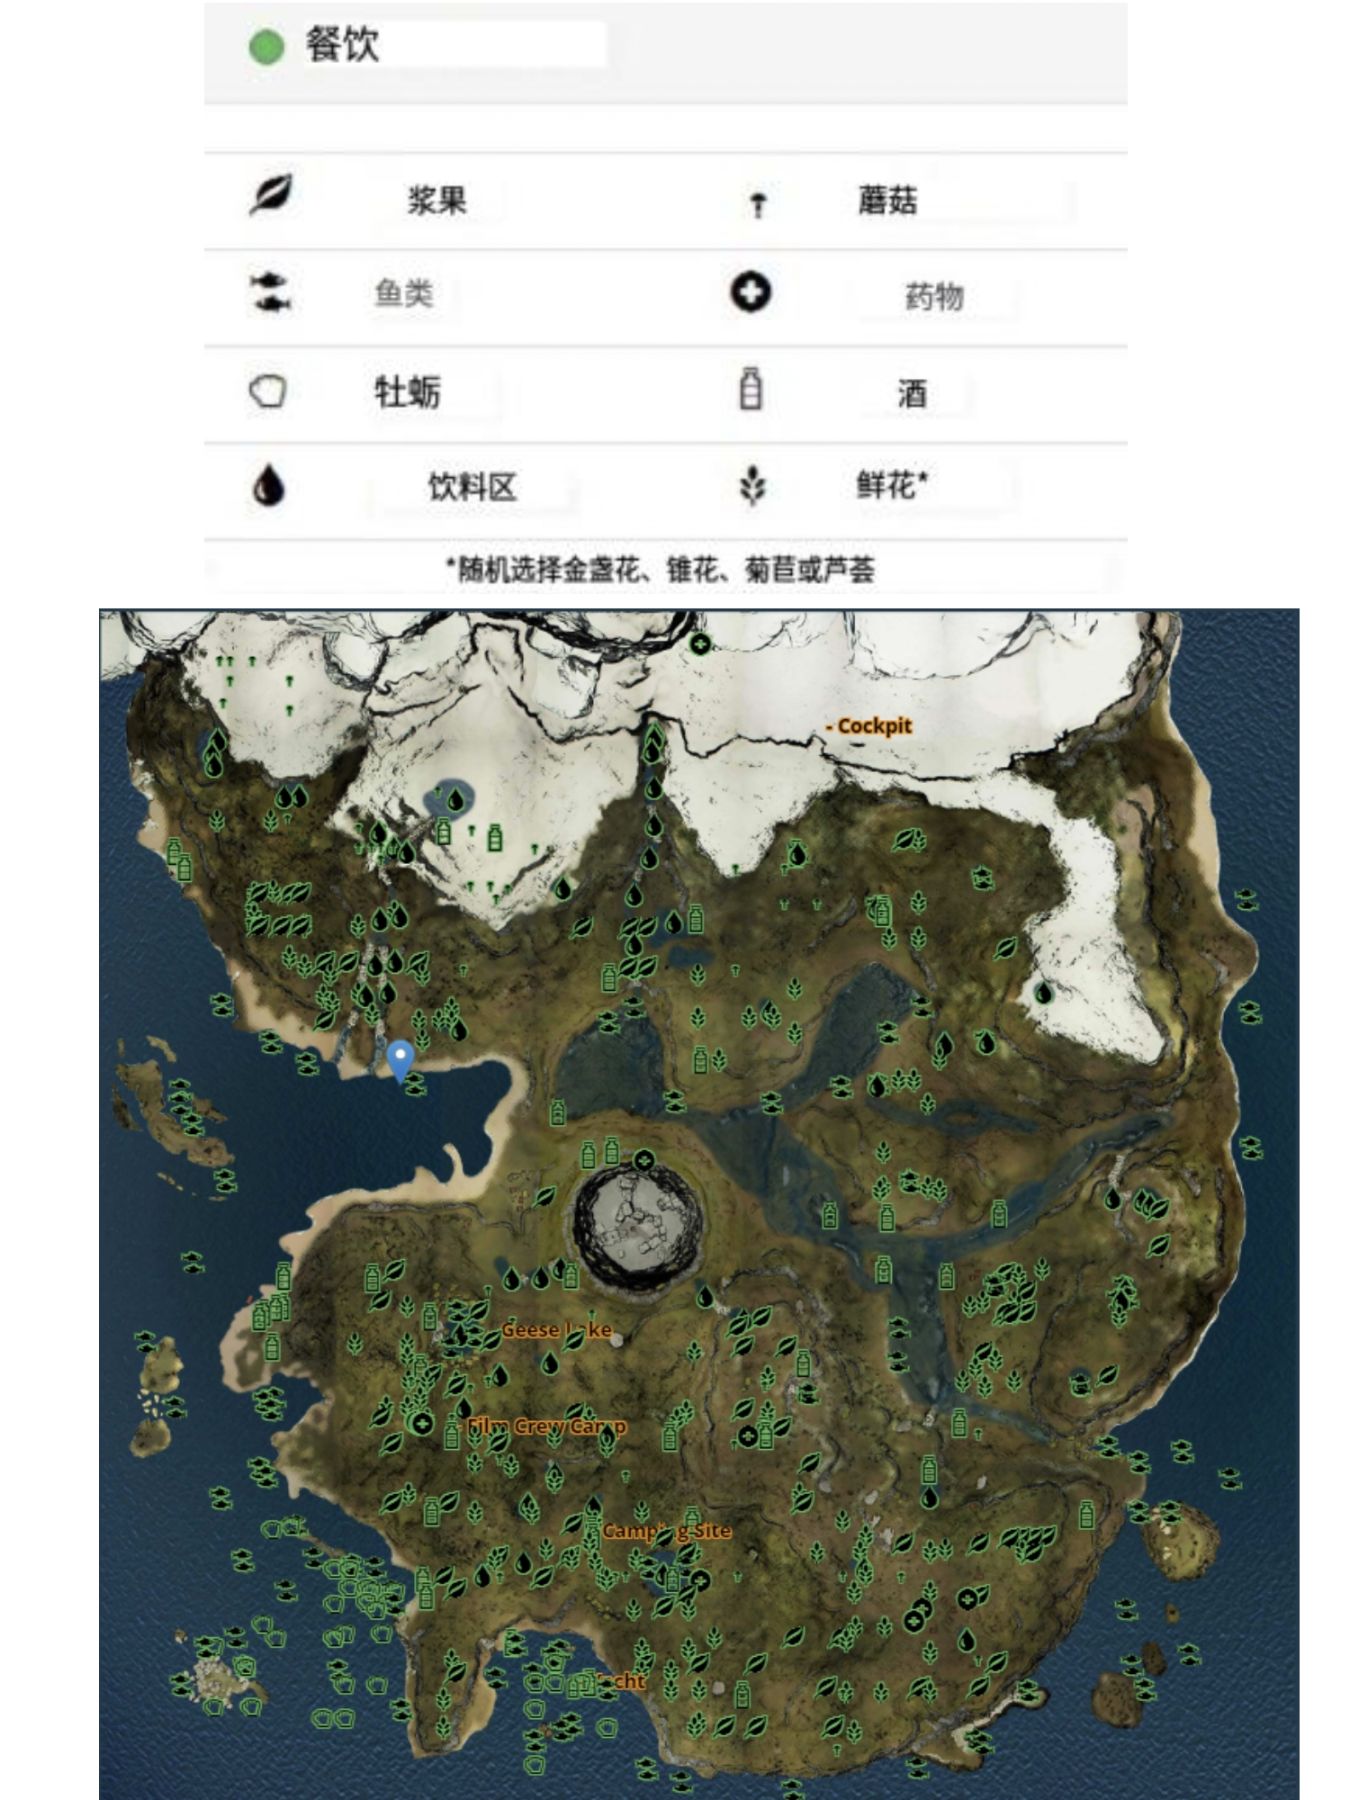 【森林】The Forest 全物品分布图、洞穴地图-第2张